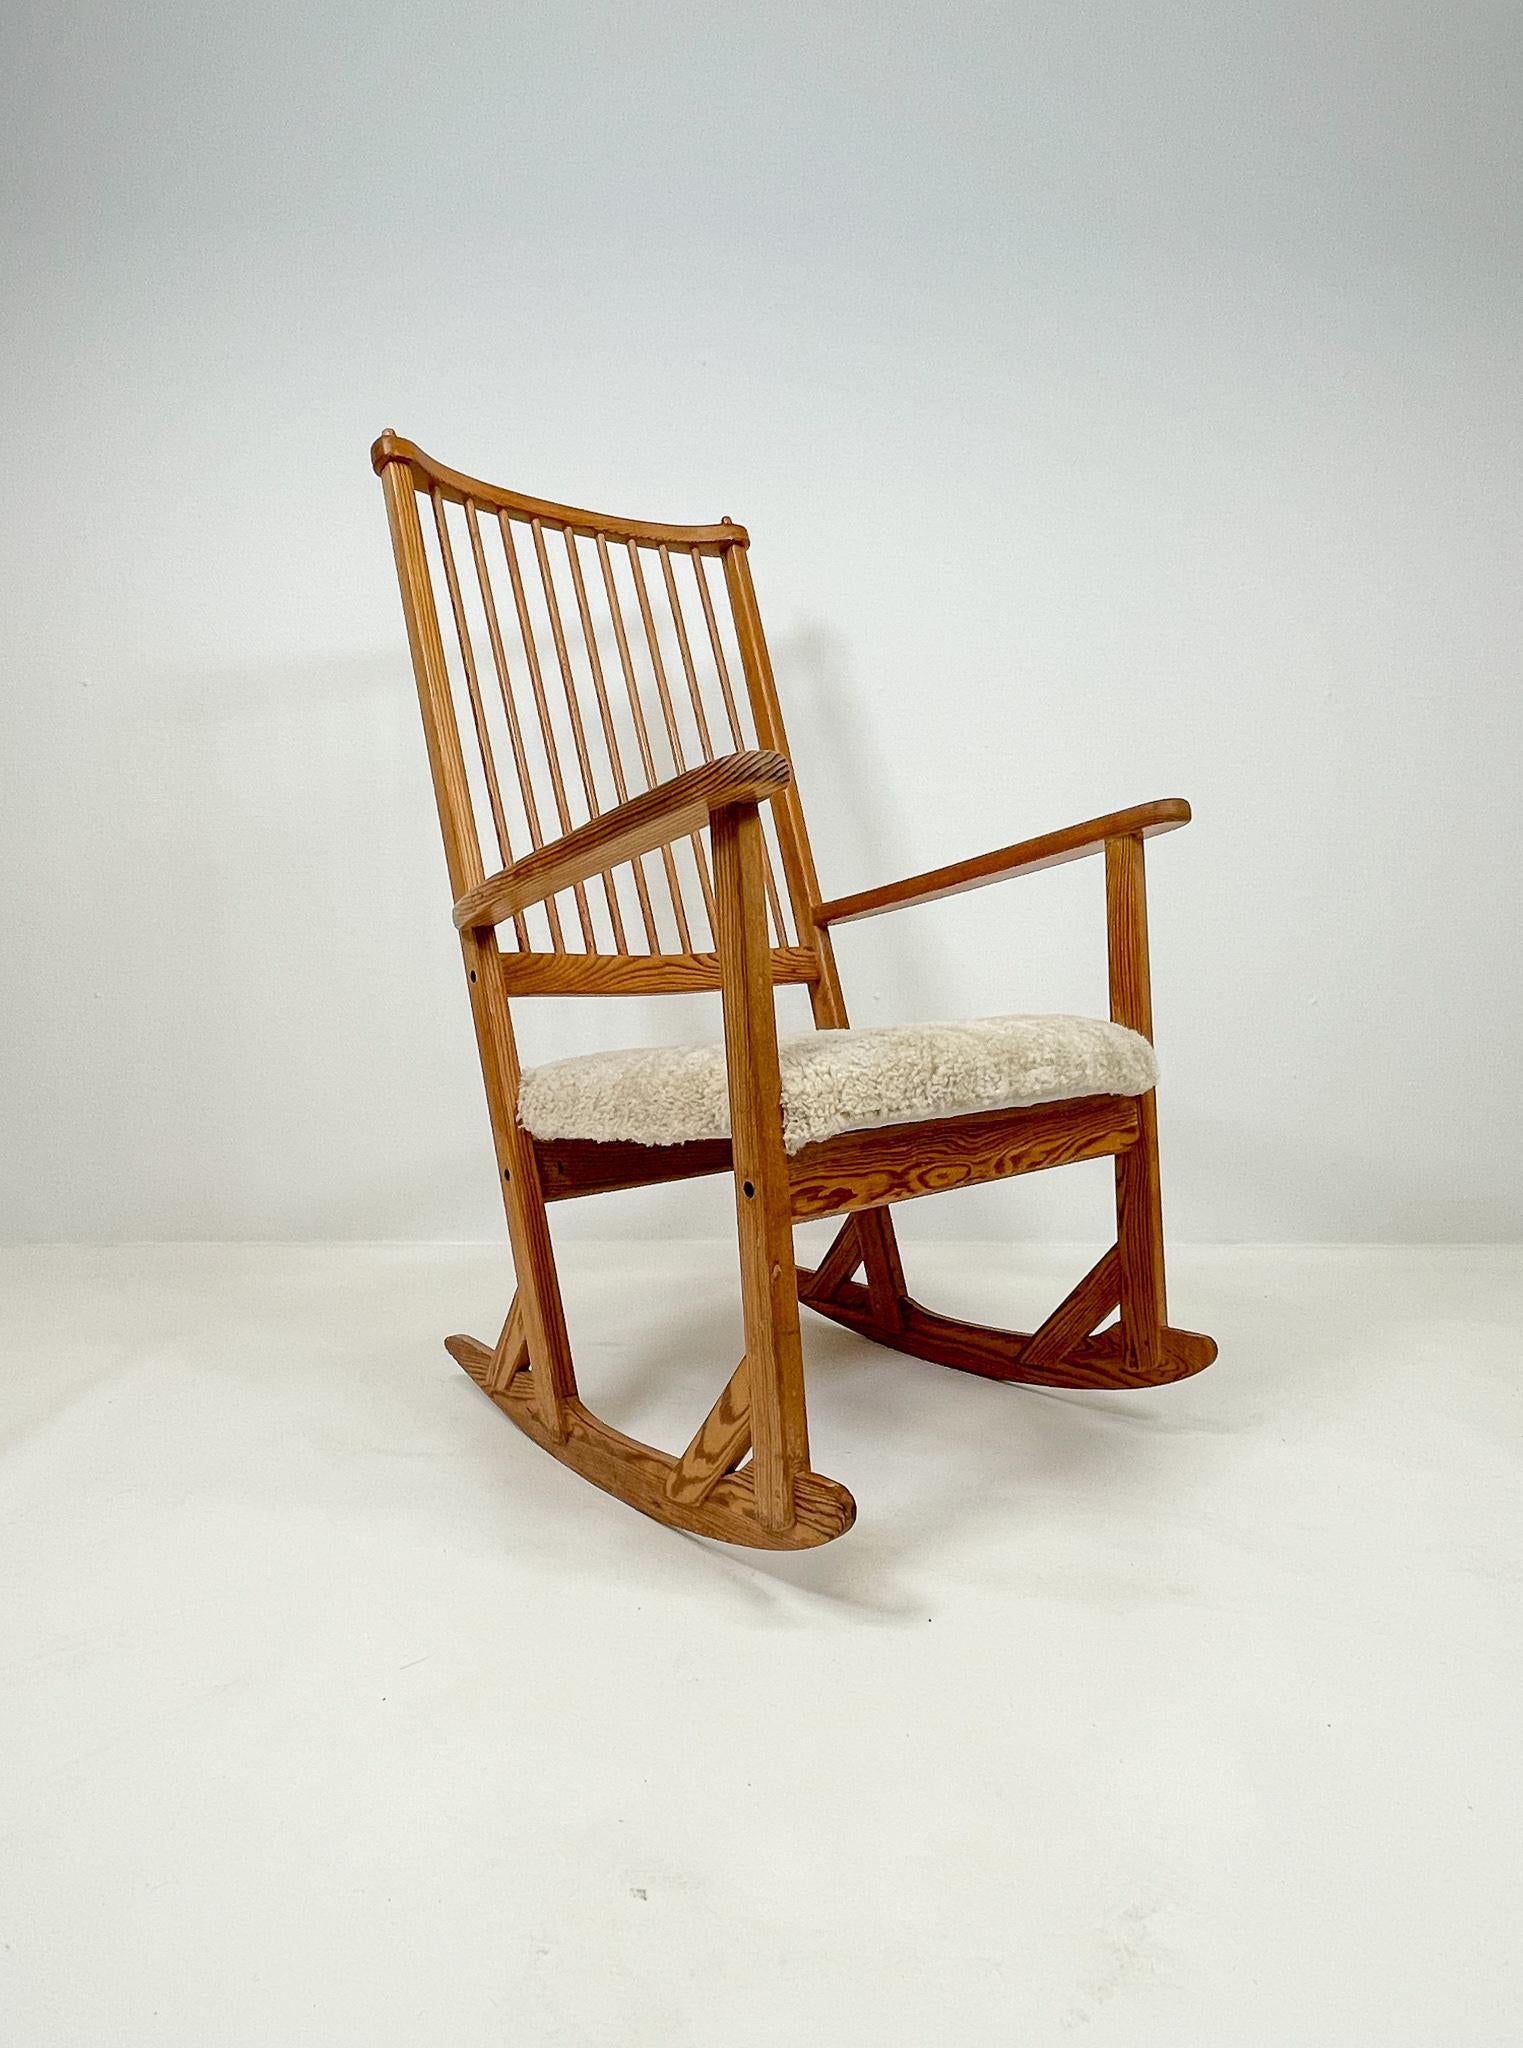 Cette chaise à bascule merveilleusement travaillée a été conçue par le célèbre designer suédois Yngve Ekström dans les années 1970 et produite par Swedese. Celui-ci est fabriqué en pin avec un siège nouvellement rembourré en peau de mouton. 

Bon